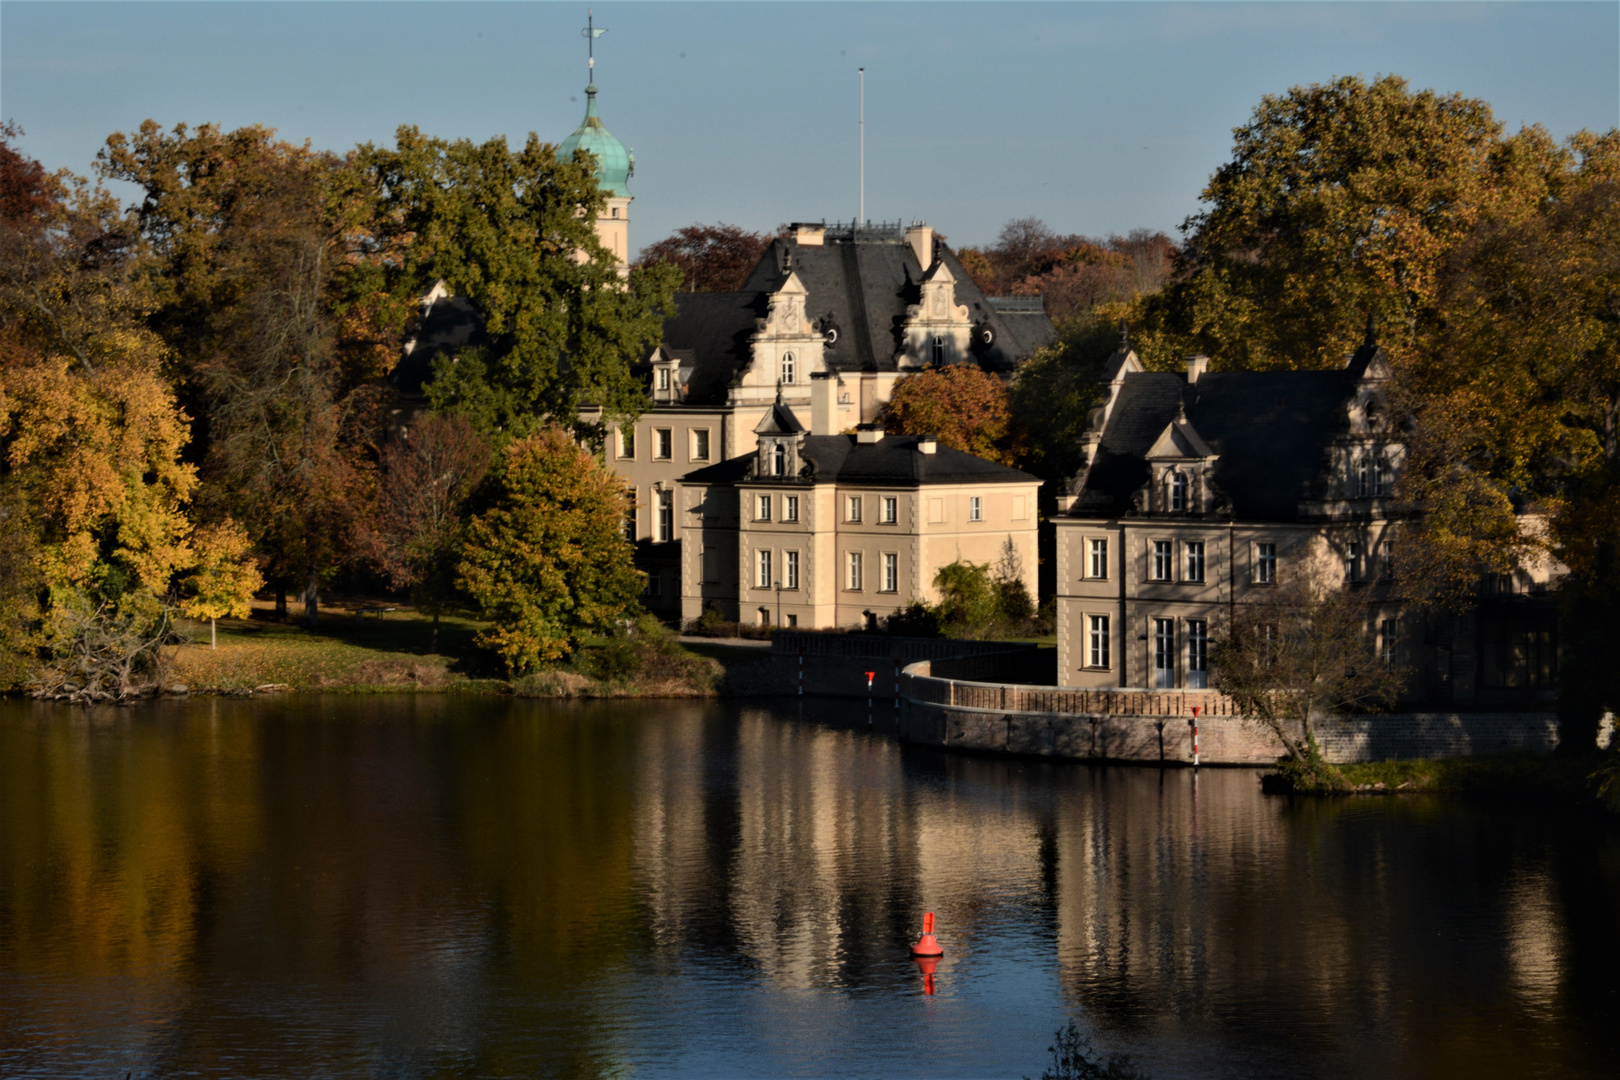 Der Herbst ist an der Glienicker Lake, Potsdam, angekommen.